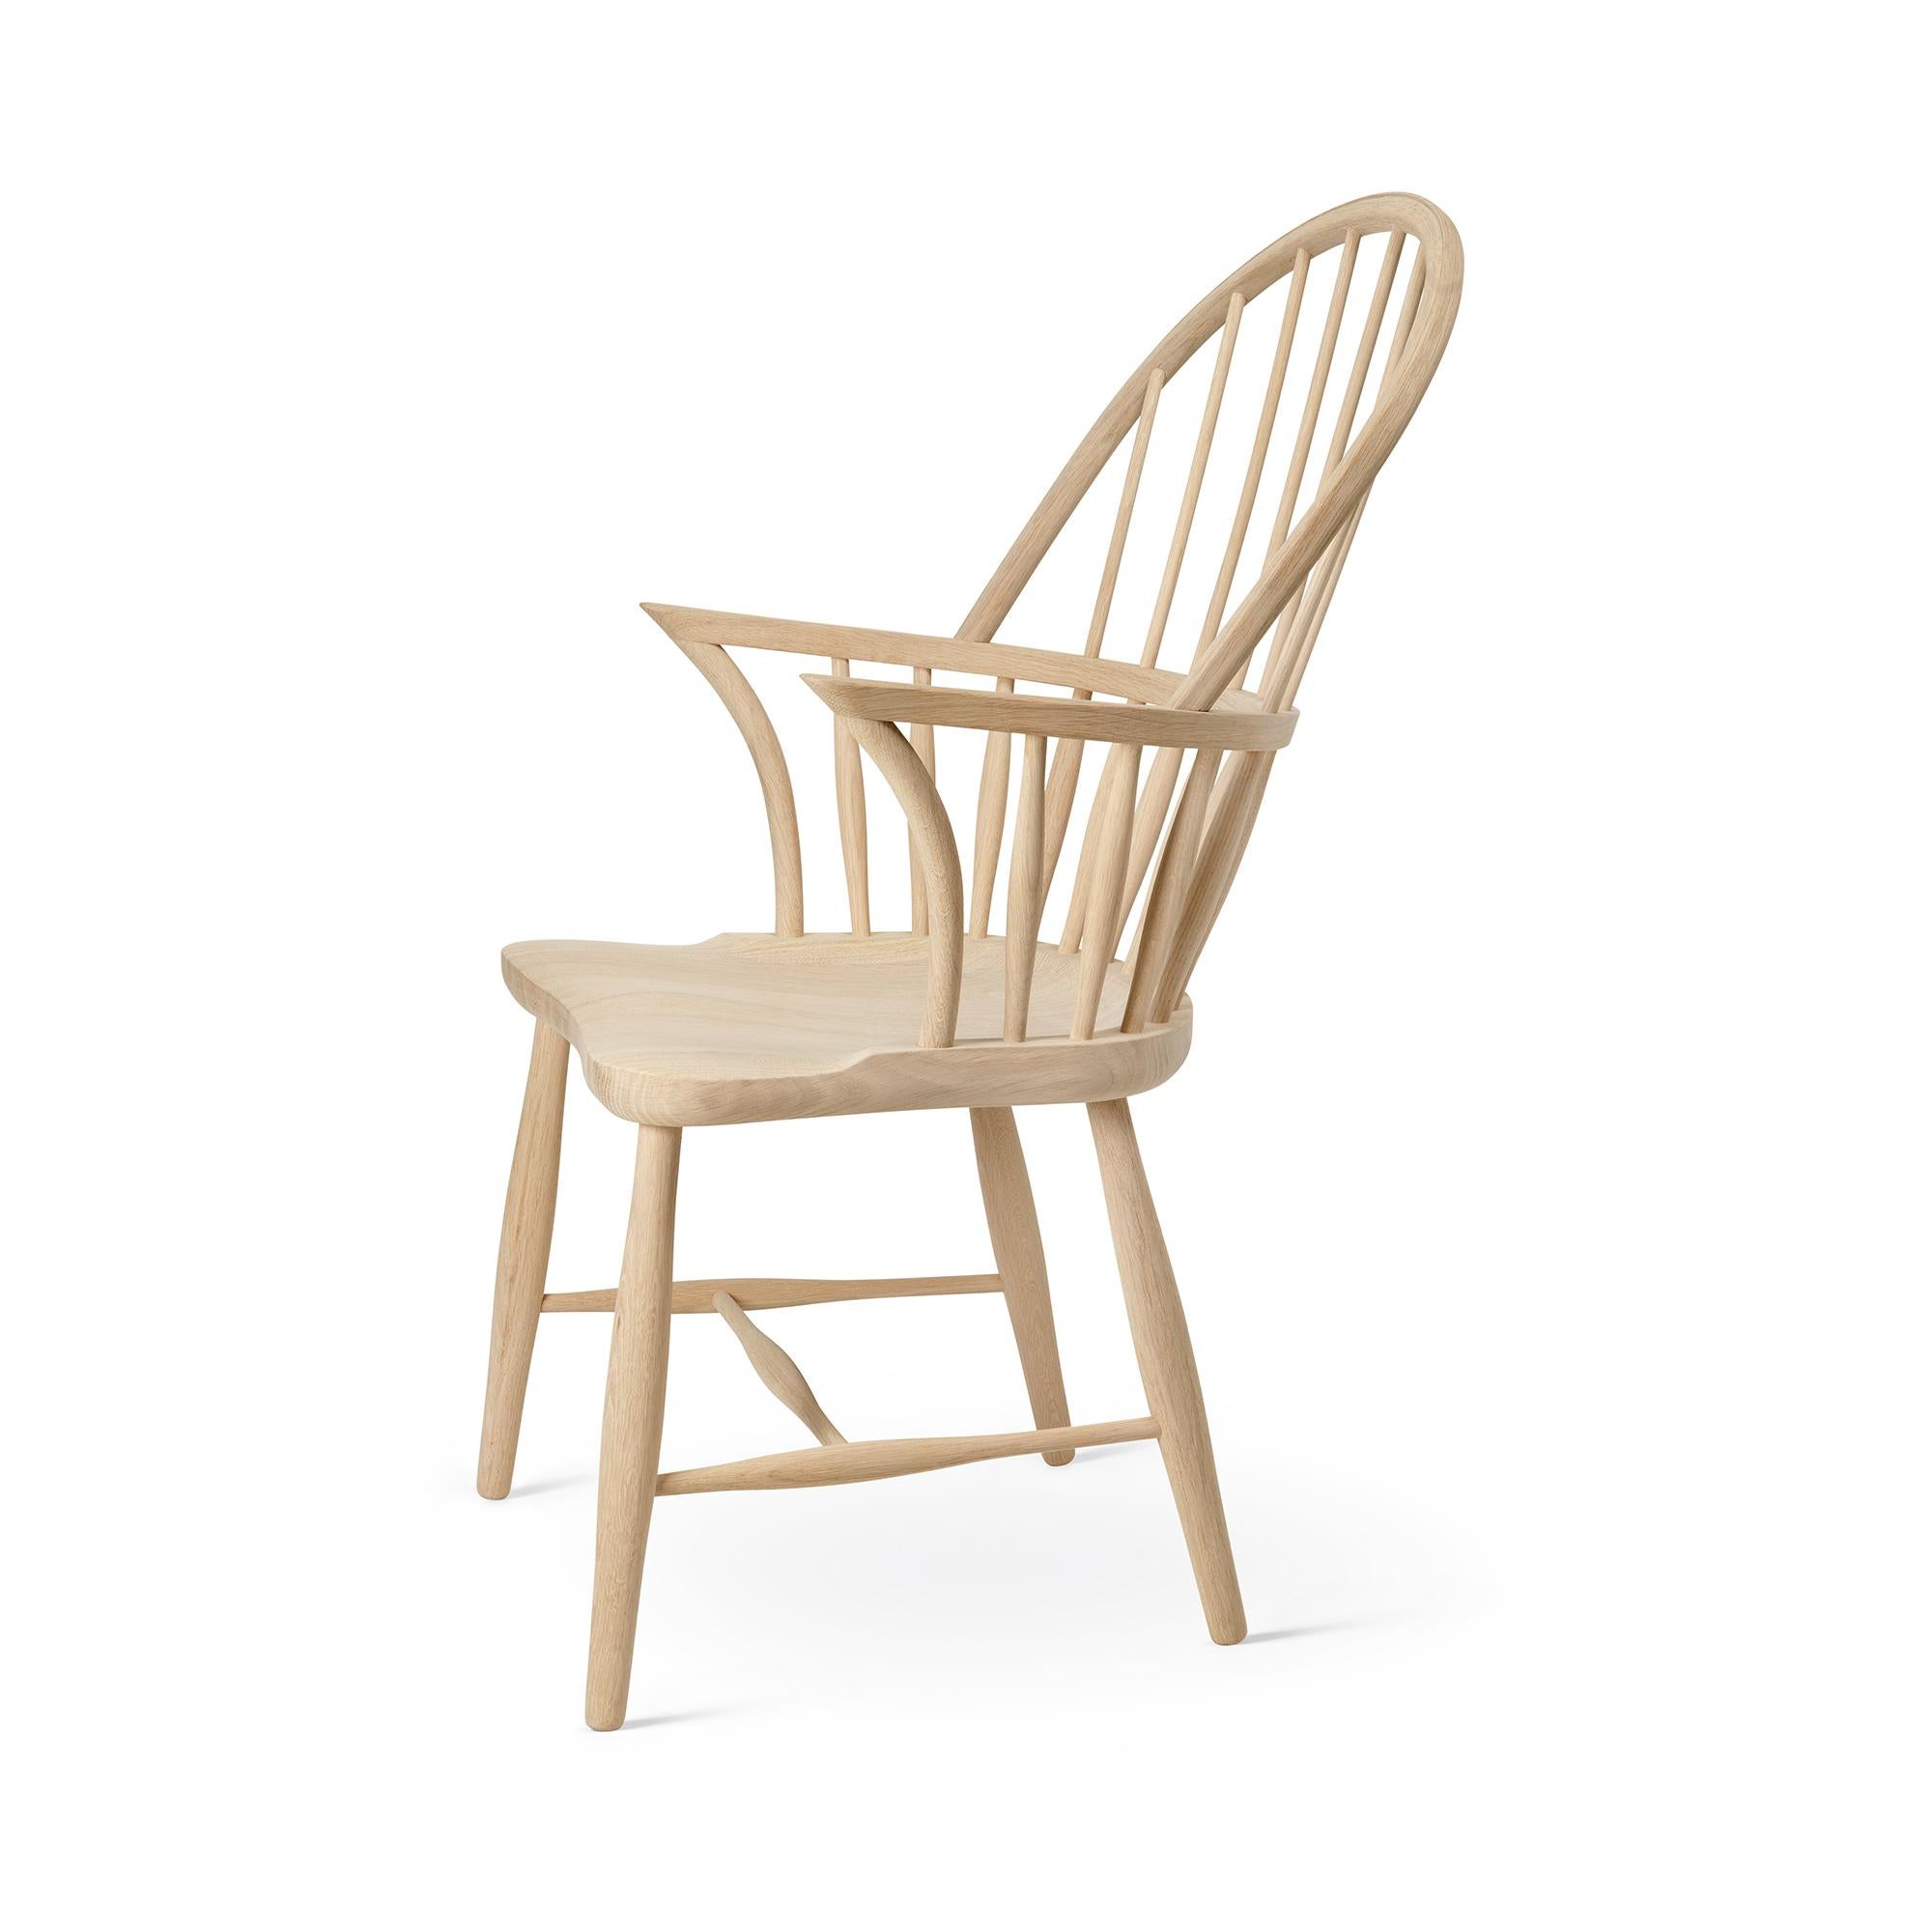 Frits Henningsen 'FH38 Windsor' Chair in Oiled Oak for Carl Hansen & Son For Sale 7